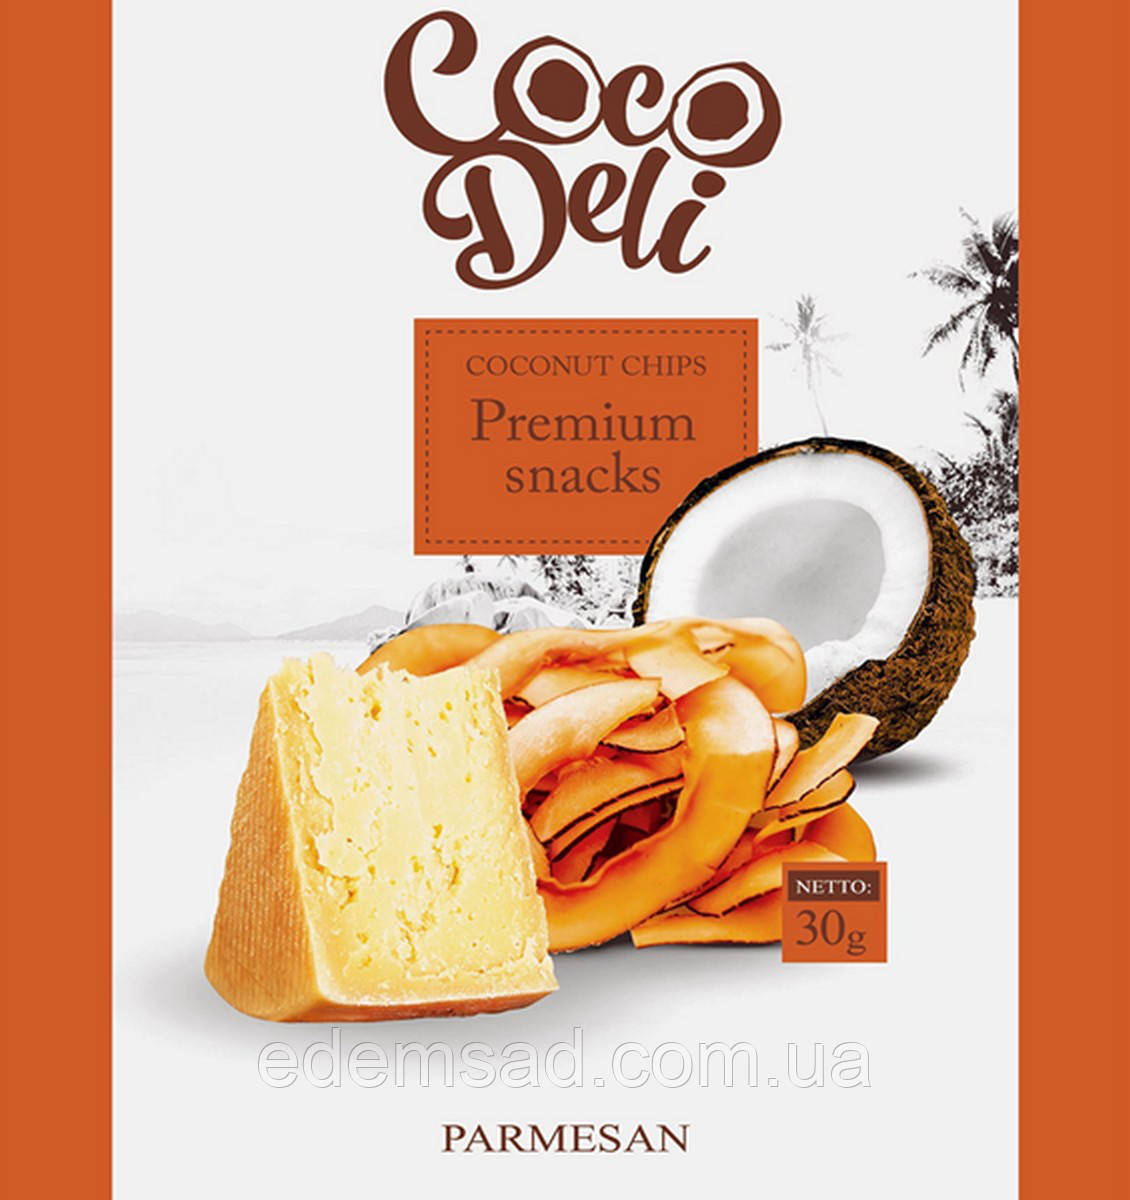 Чипсы кокосовые с сыром пармезан "Coco Deli", 30г